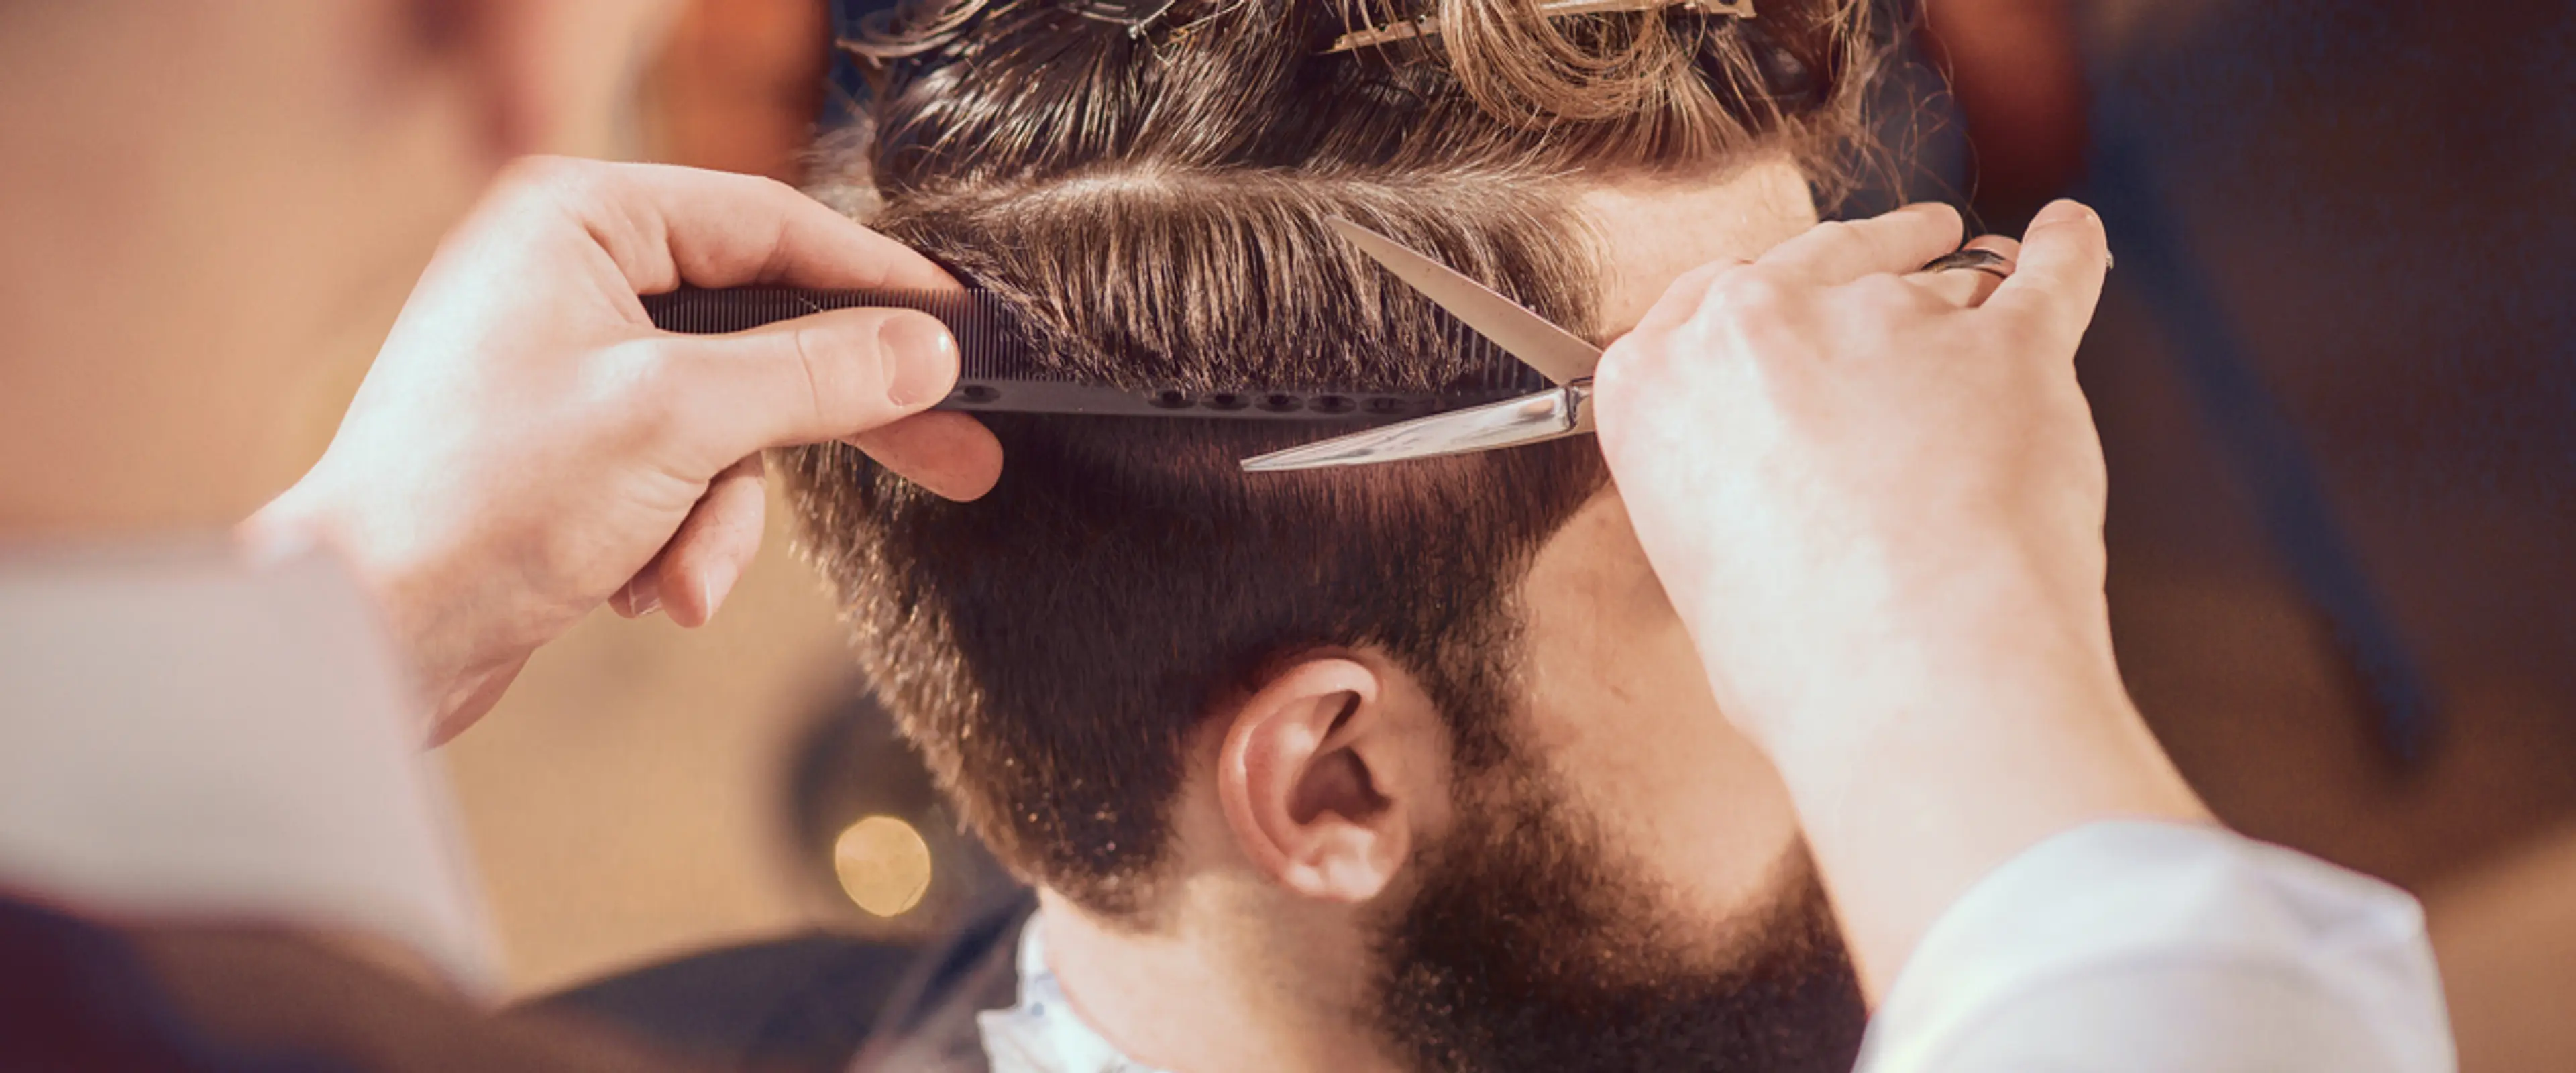 Smittevernveileder for virksomheter med en-til-en-kontakt som frisører, kroppspleie mv. Foto: Shutterstock